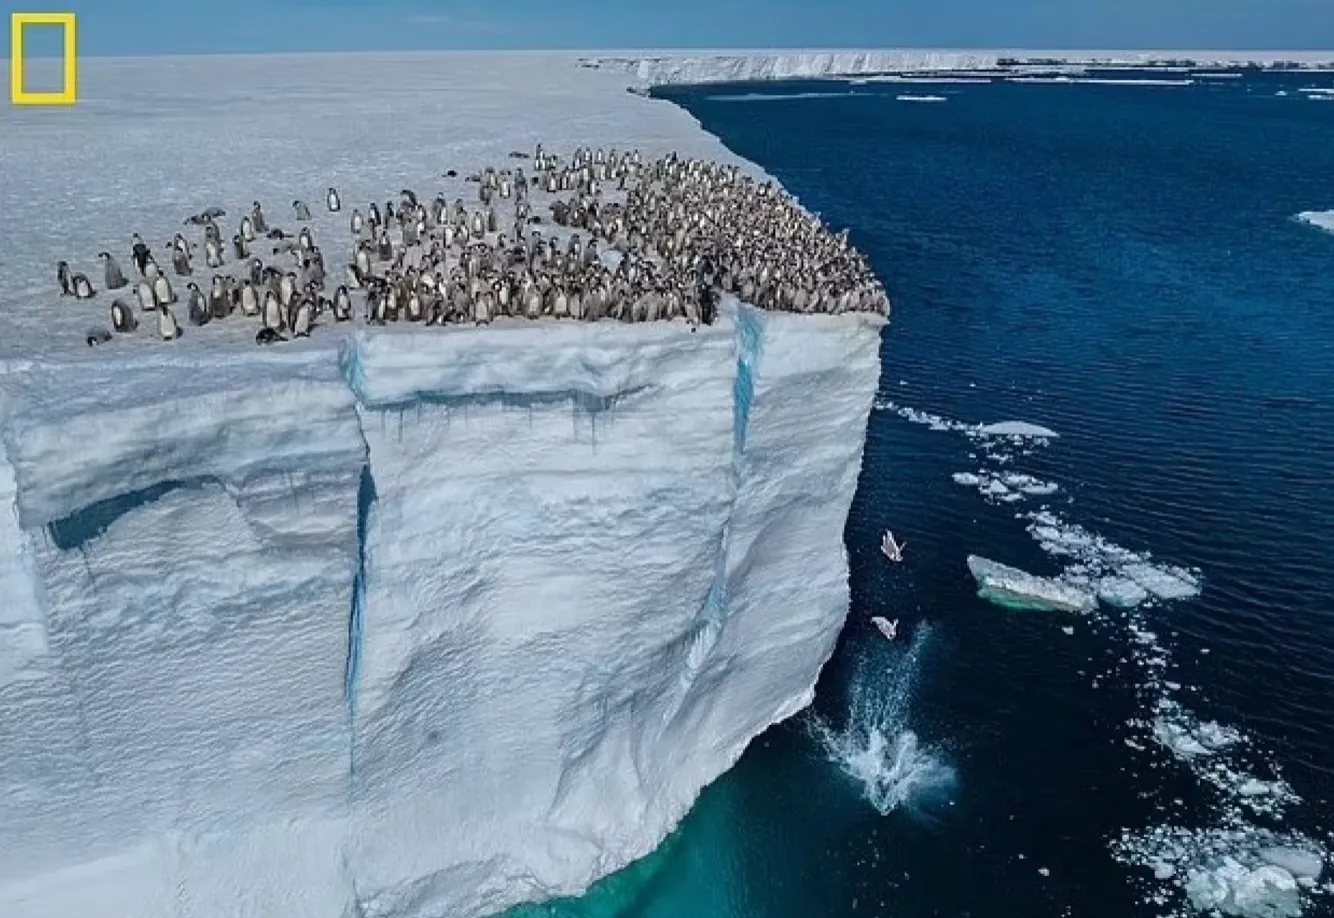 Детеныши пингвинов прыгают в океан с высоты 15 метров